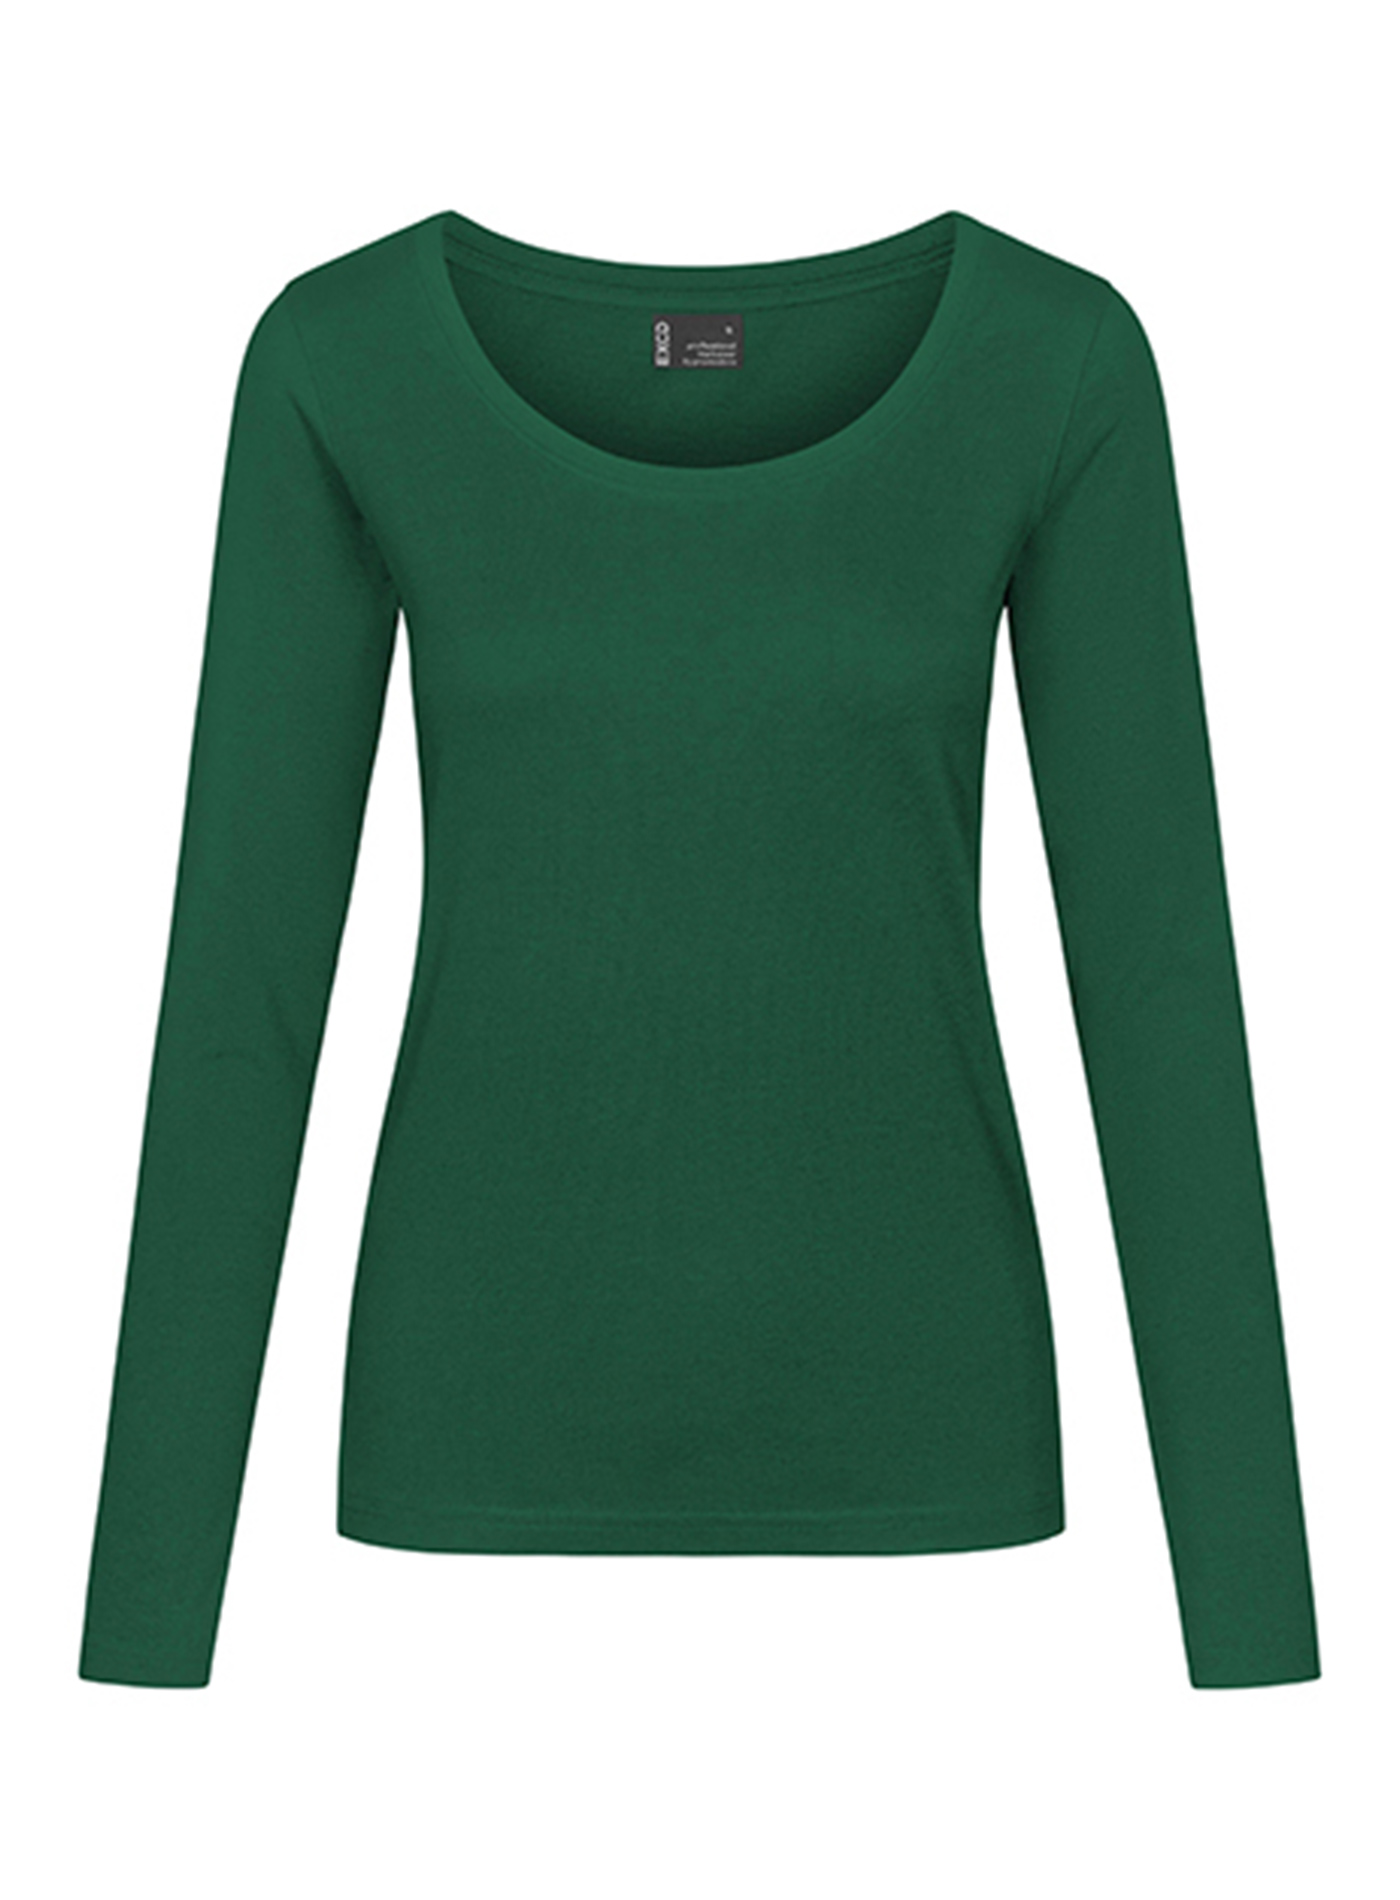 Dámské tričko s dlouhým rukávem Promodoro - Zelená L